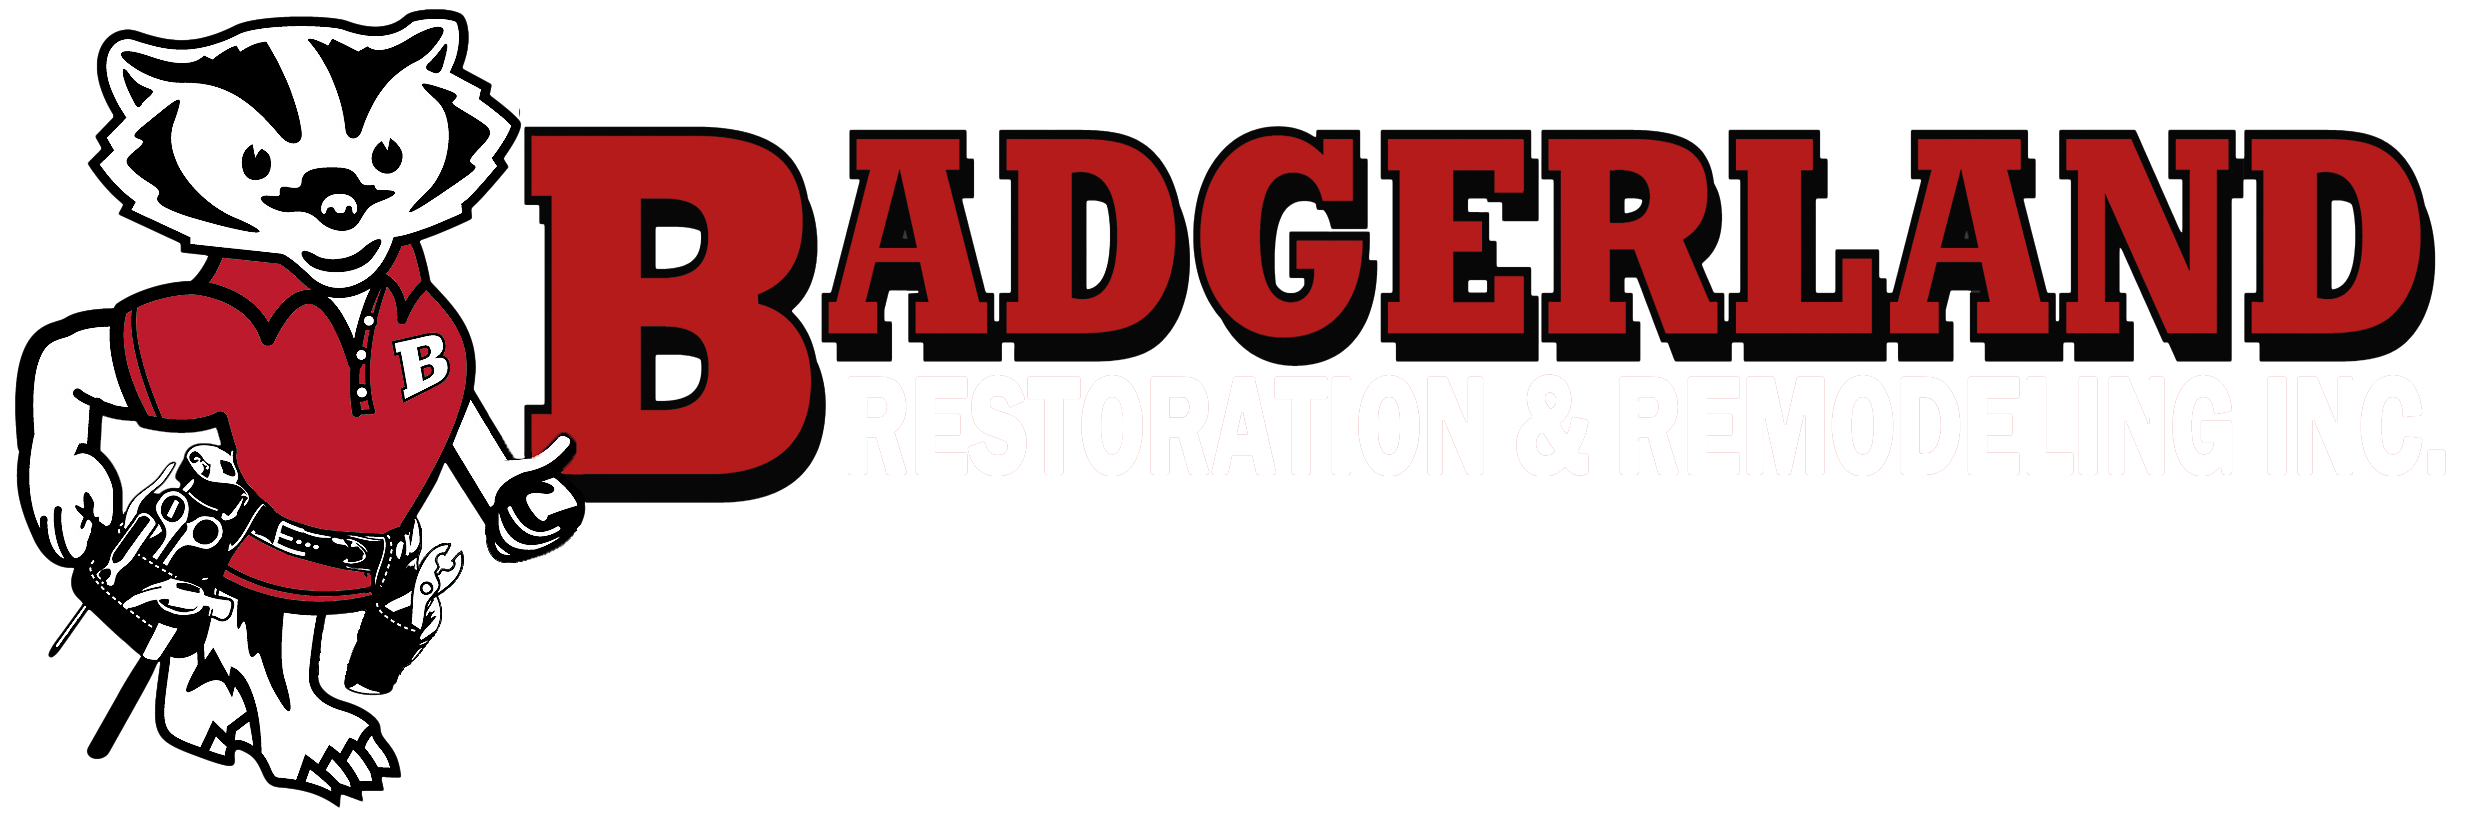 Badgerland Restoration and Remodeling Logo